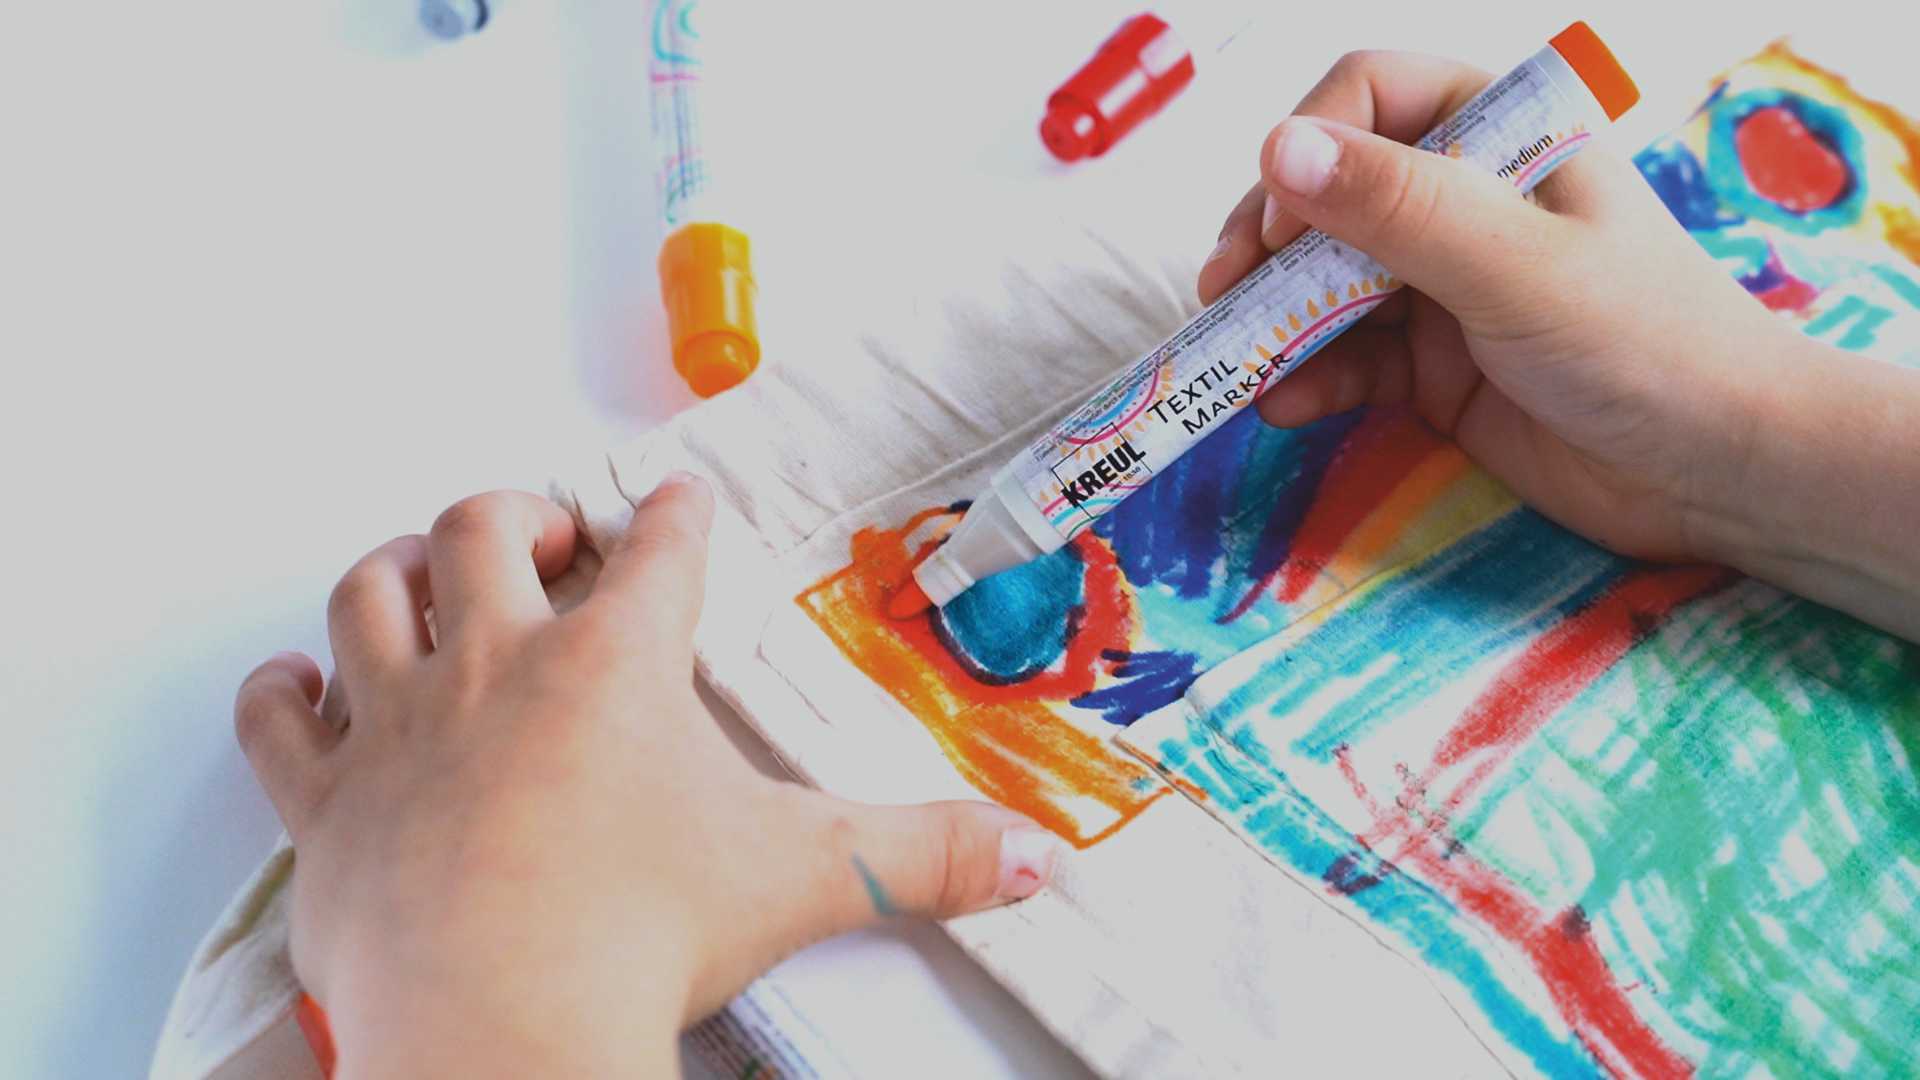 KREUL textil Marker Kinder ohne schütteln Pumpen einfache Anwendung Schule Basteln Stoff malen